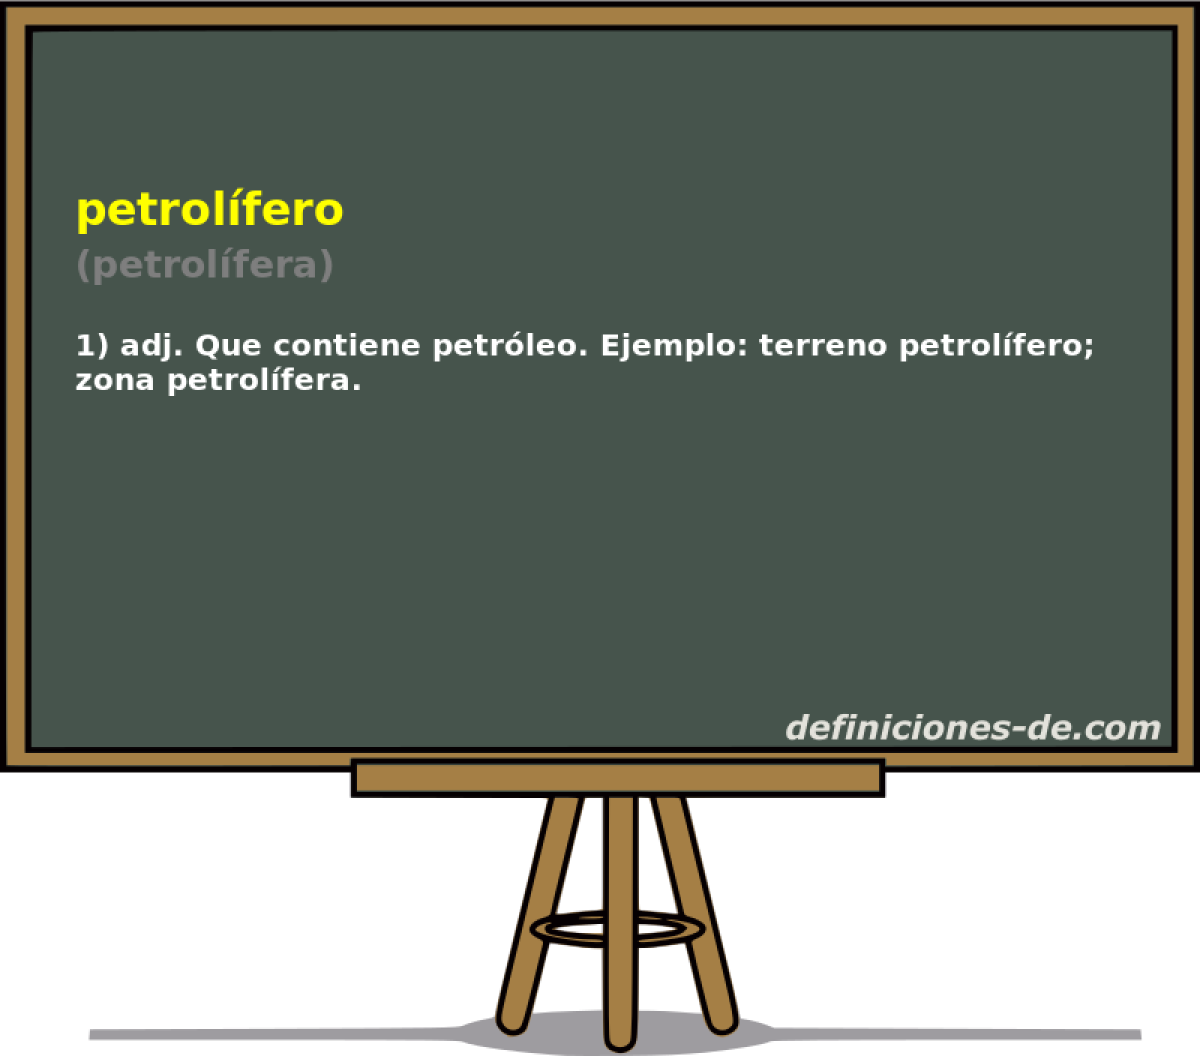 petrolfero (petrolfera)